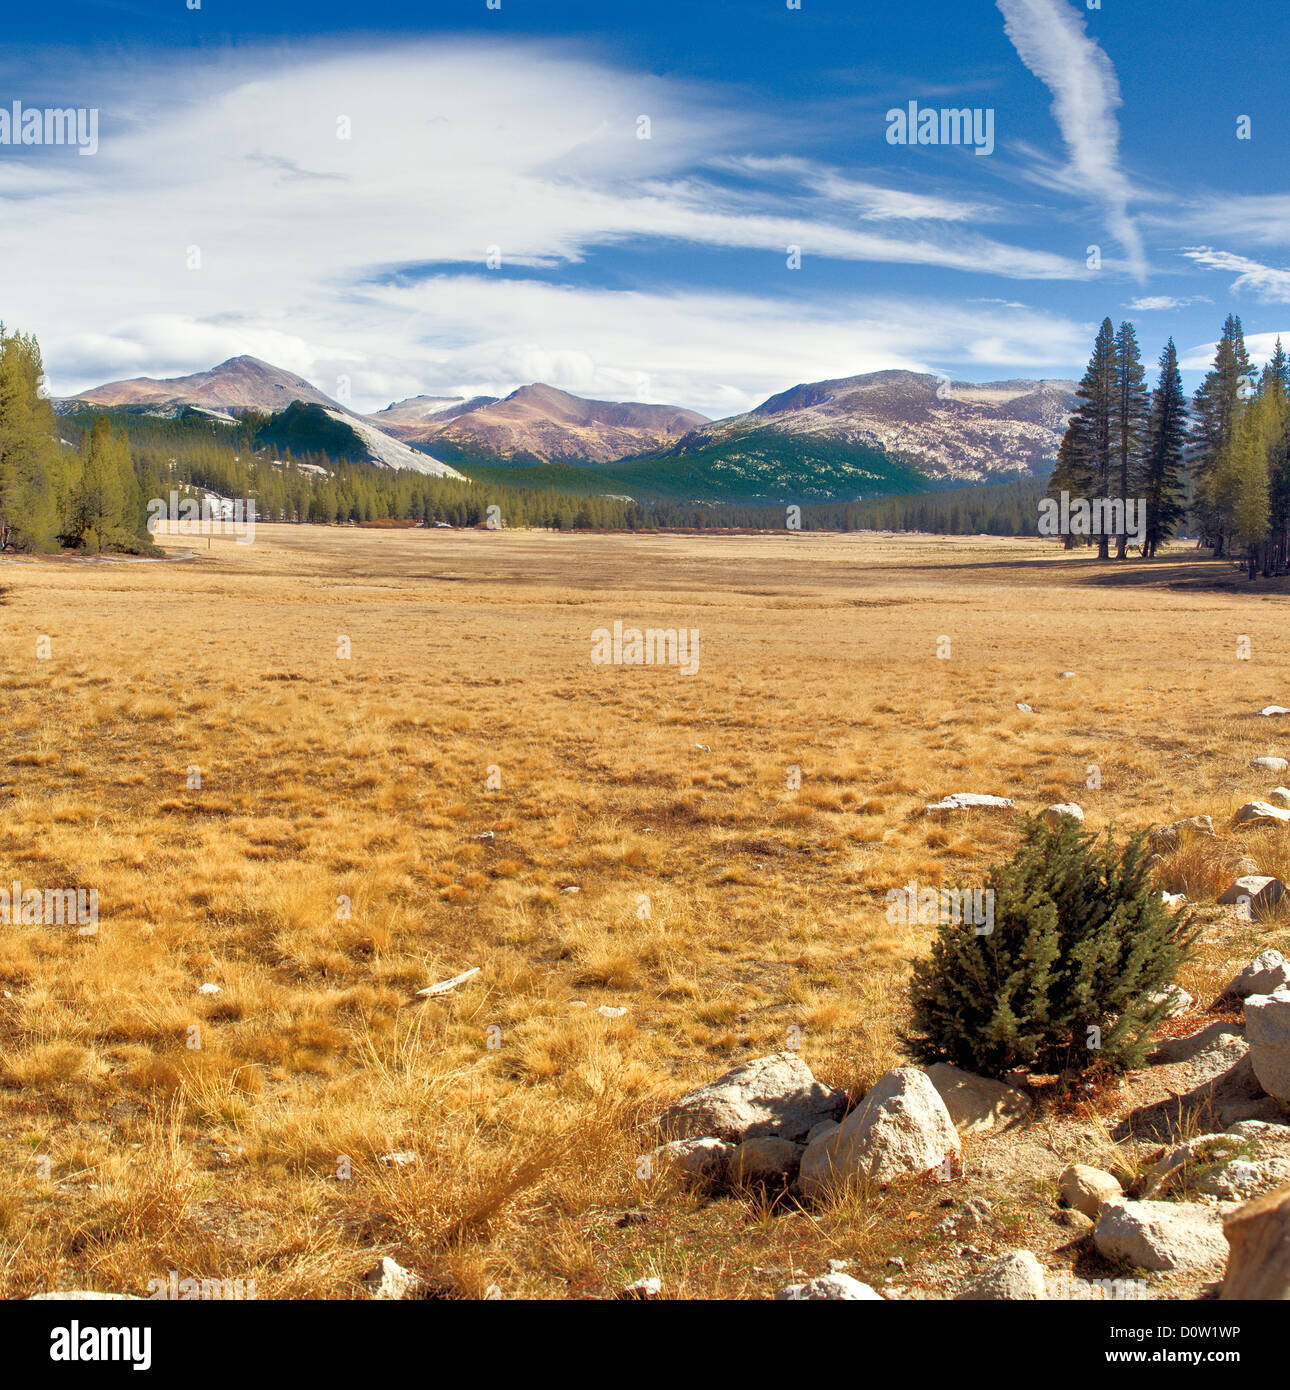 Tuolumne Meadows - Parco Nazionale di Yosemite in California negli Stati Uniti. Immagine ad alta risoluzione. Foto Stock